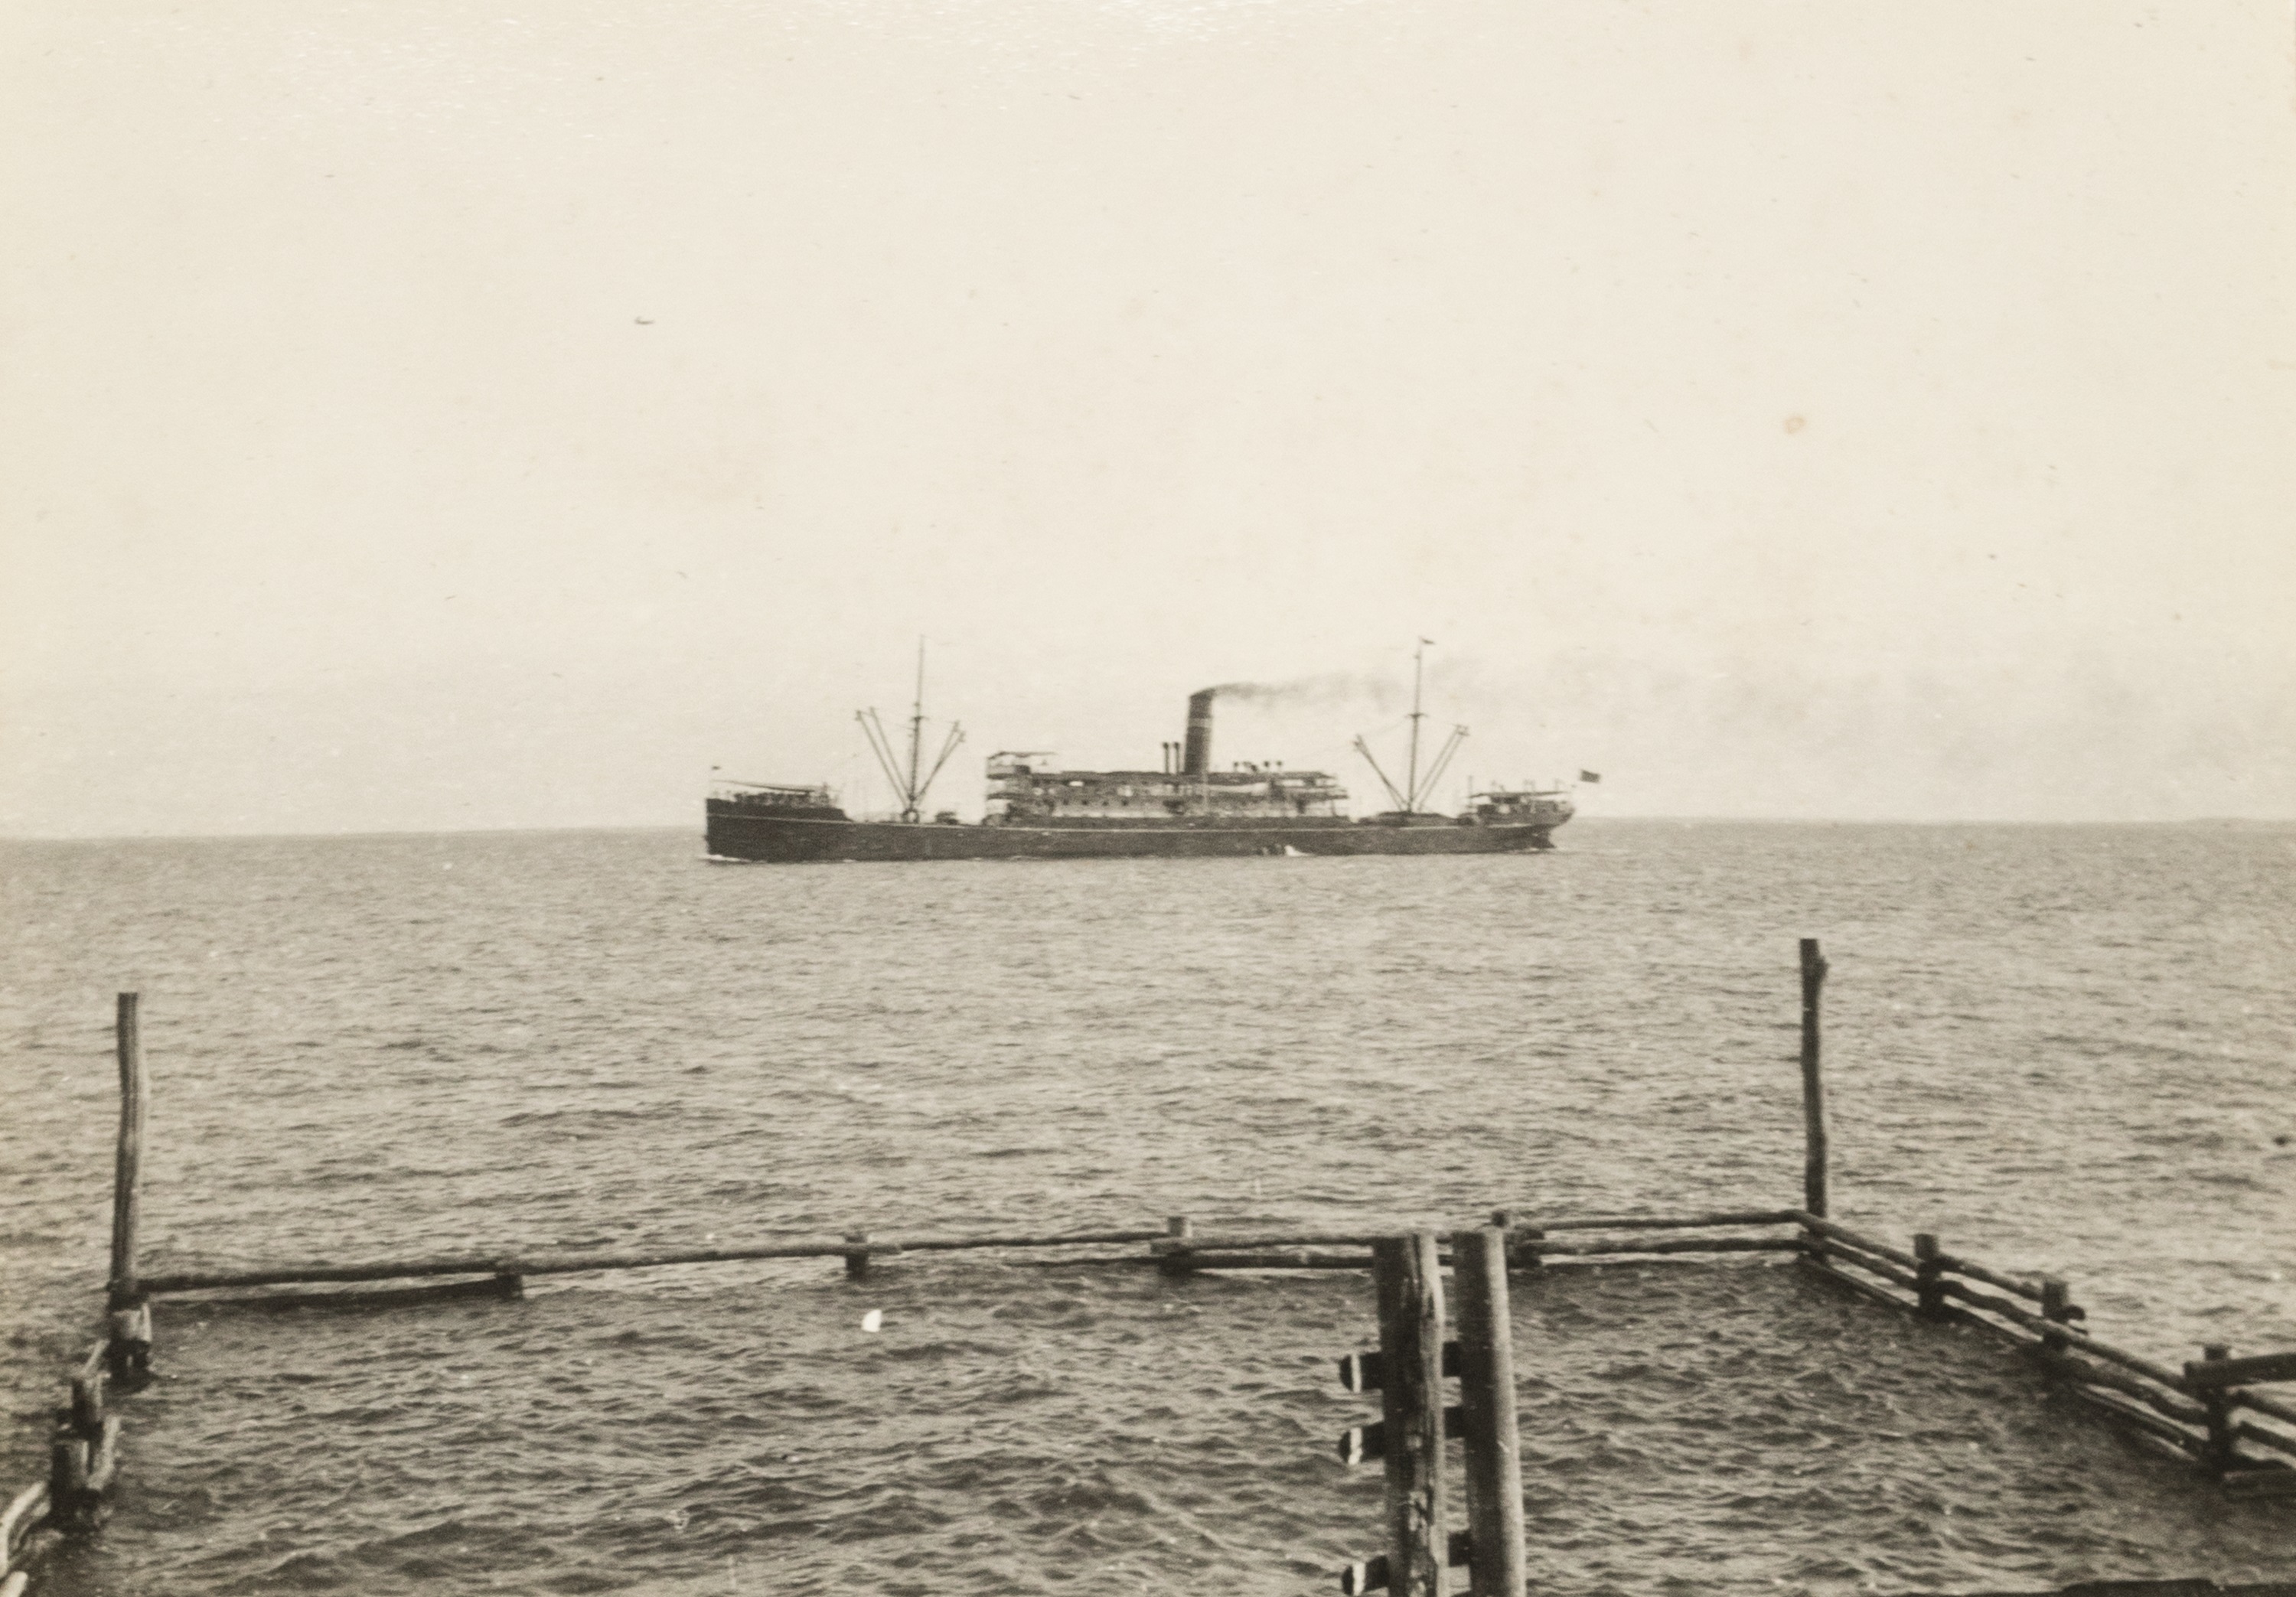 SS Mataram 船的历史黑白照片在达尔文港的岸边。” class=